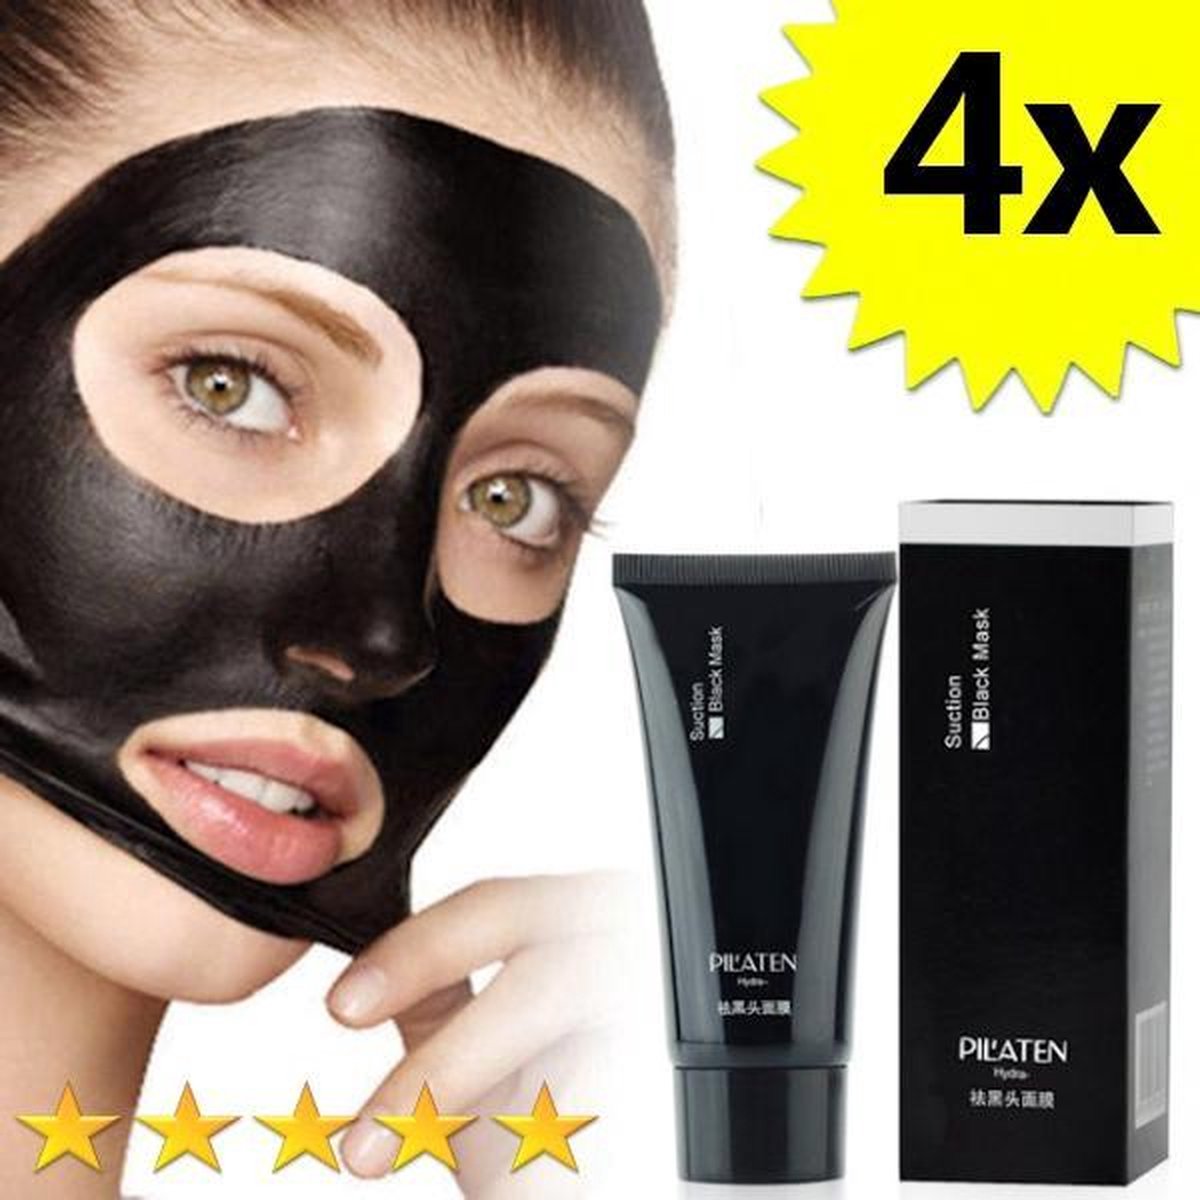 4 x Blackhead Masker Deluxe | Pilaten | Mee eters verwijderen dankzij het Zwarte masker